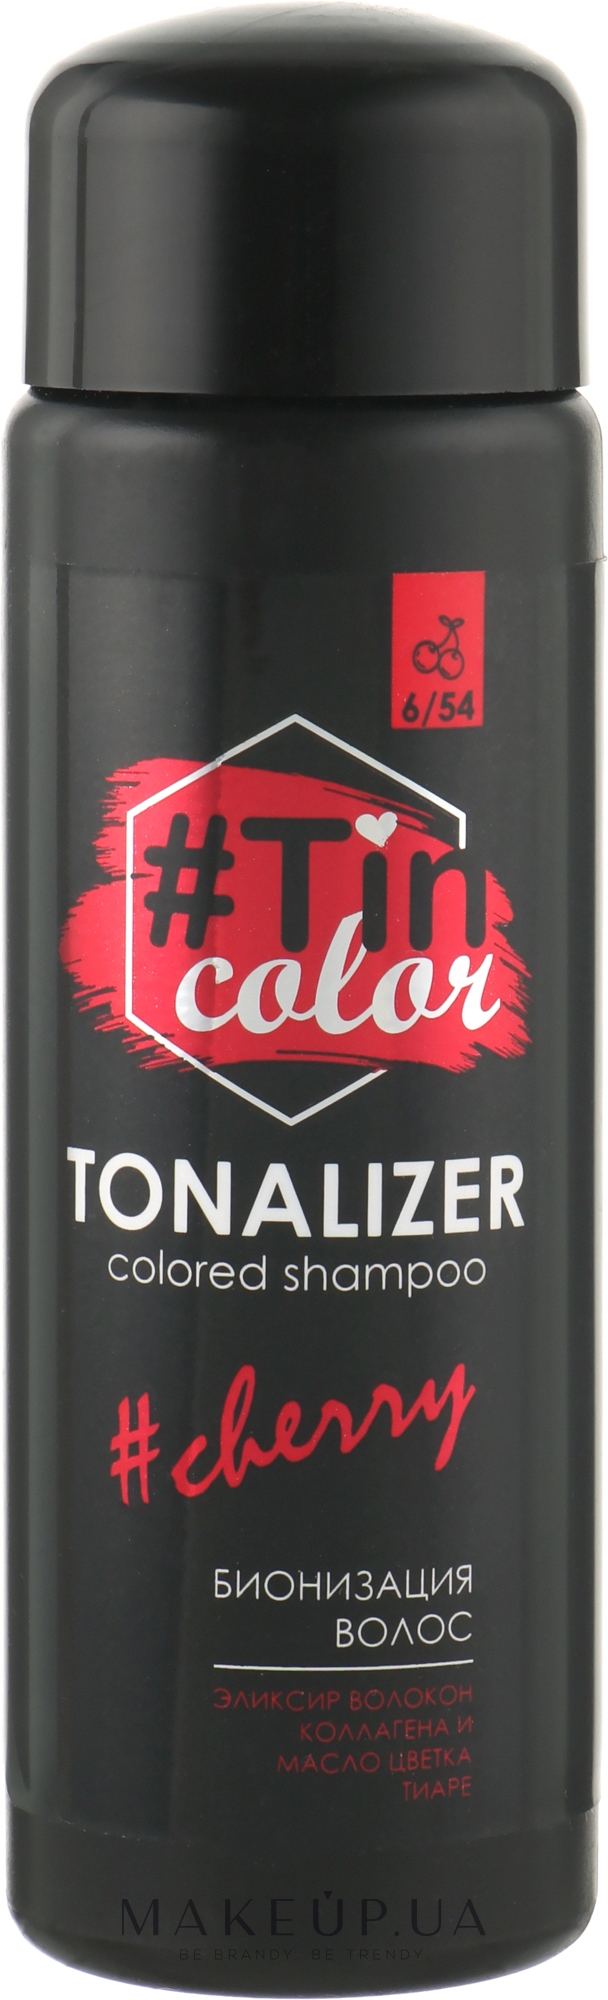 Тоналайзер для волосся - Tin Color Colored Shampoo (міні) — фото Вишневый брауни